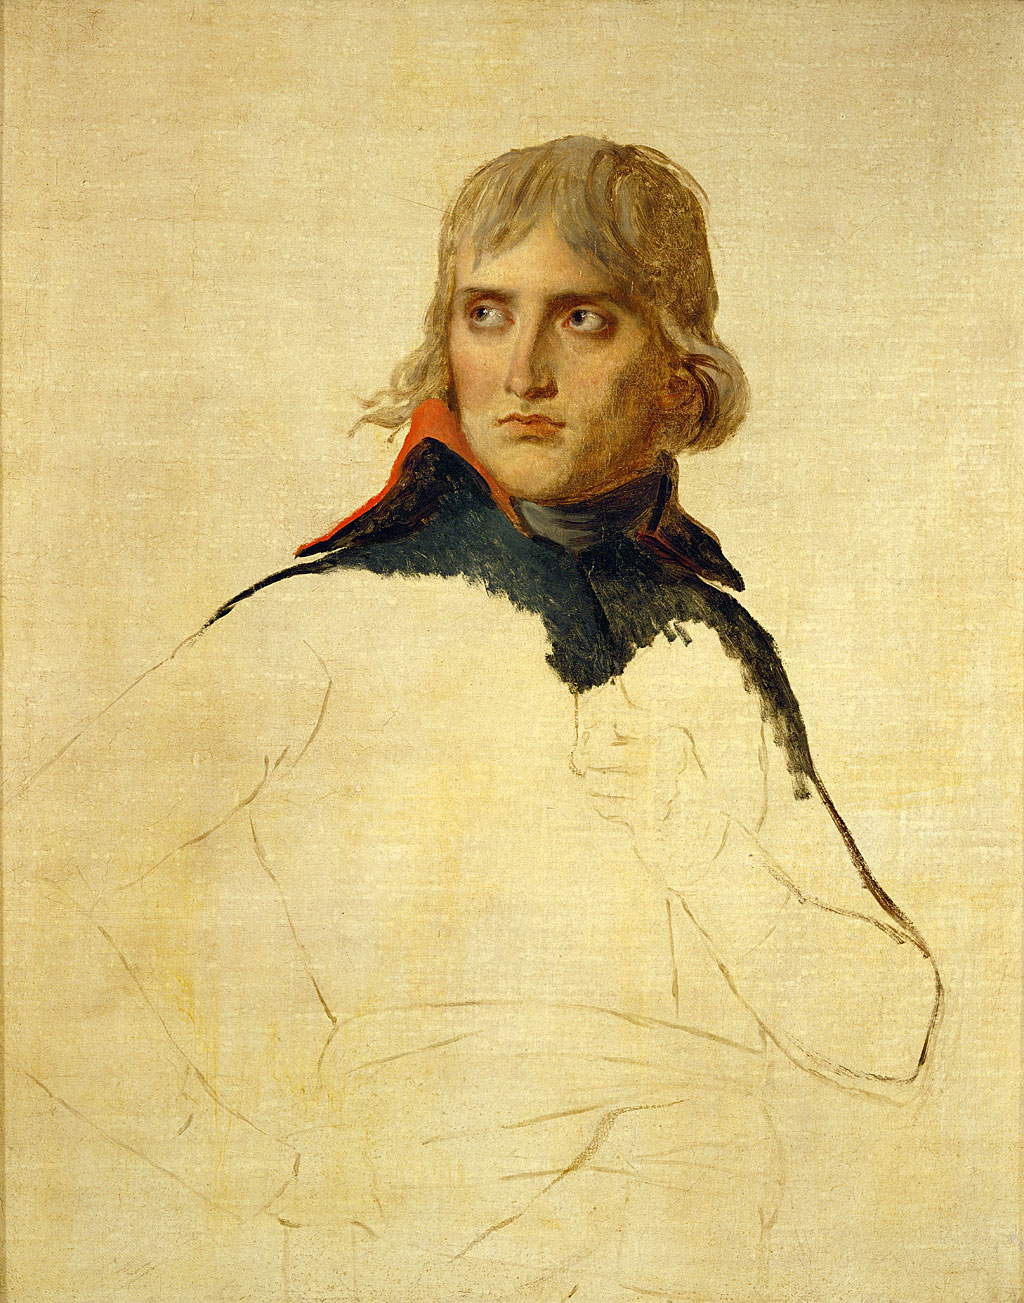 Retrato inconcluso de Napoleón hecho por Jacques-Louis David